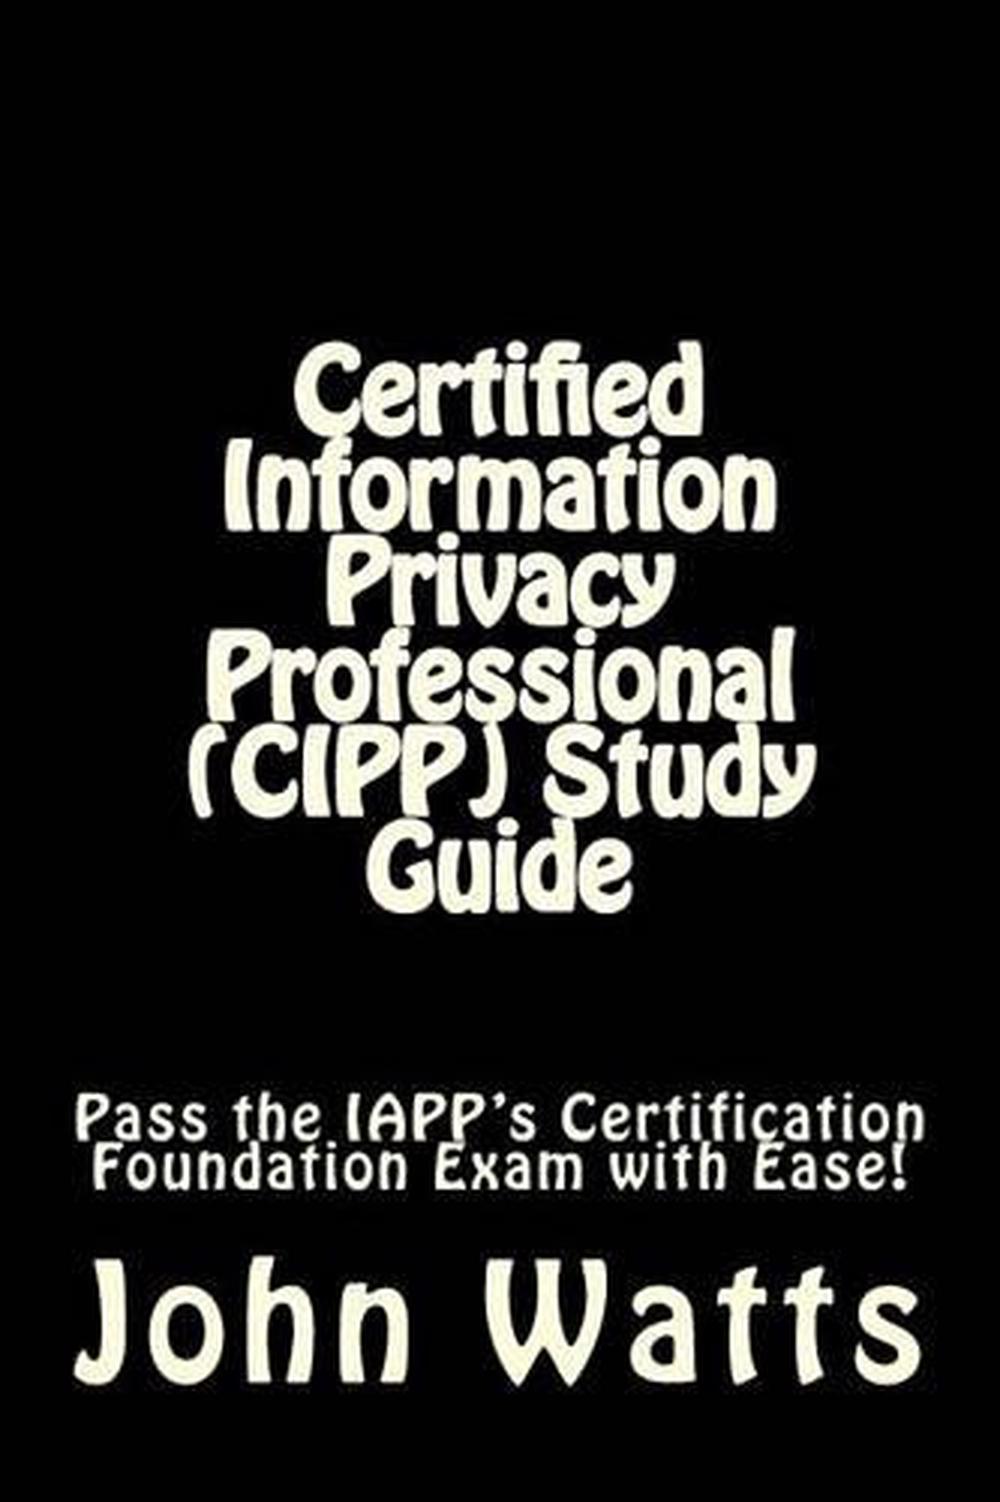 CIPP-C Exam Fragen